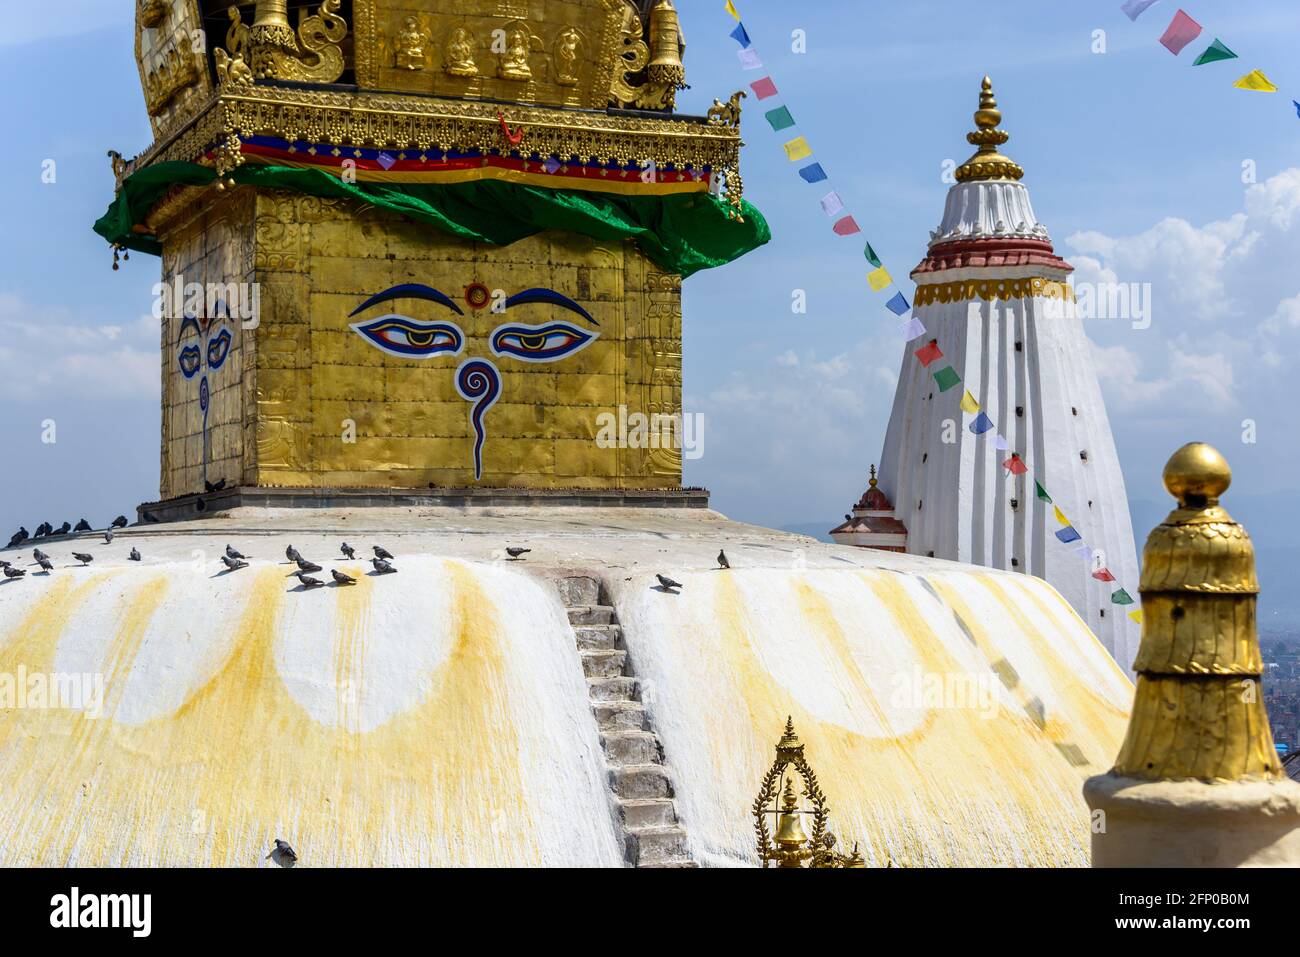 Swayambhunath stupa in Kathmandu, Nepal Stock Photo